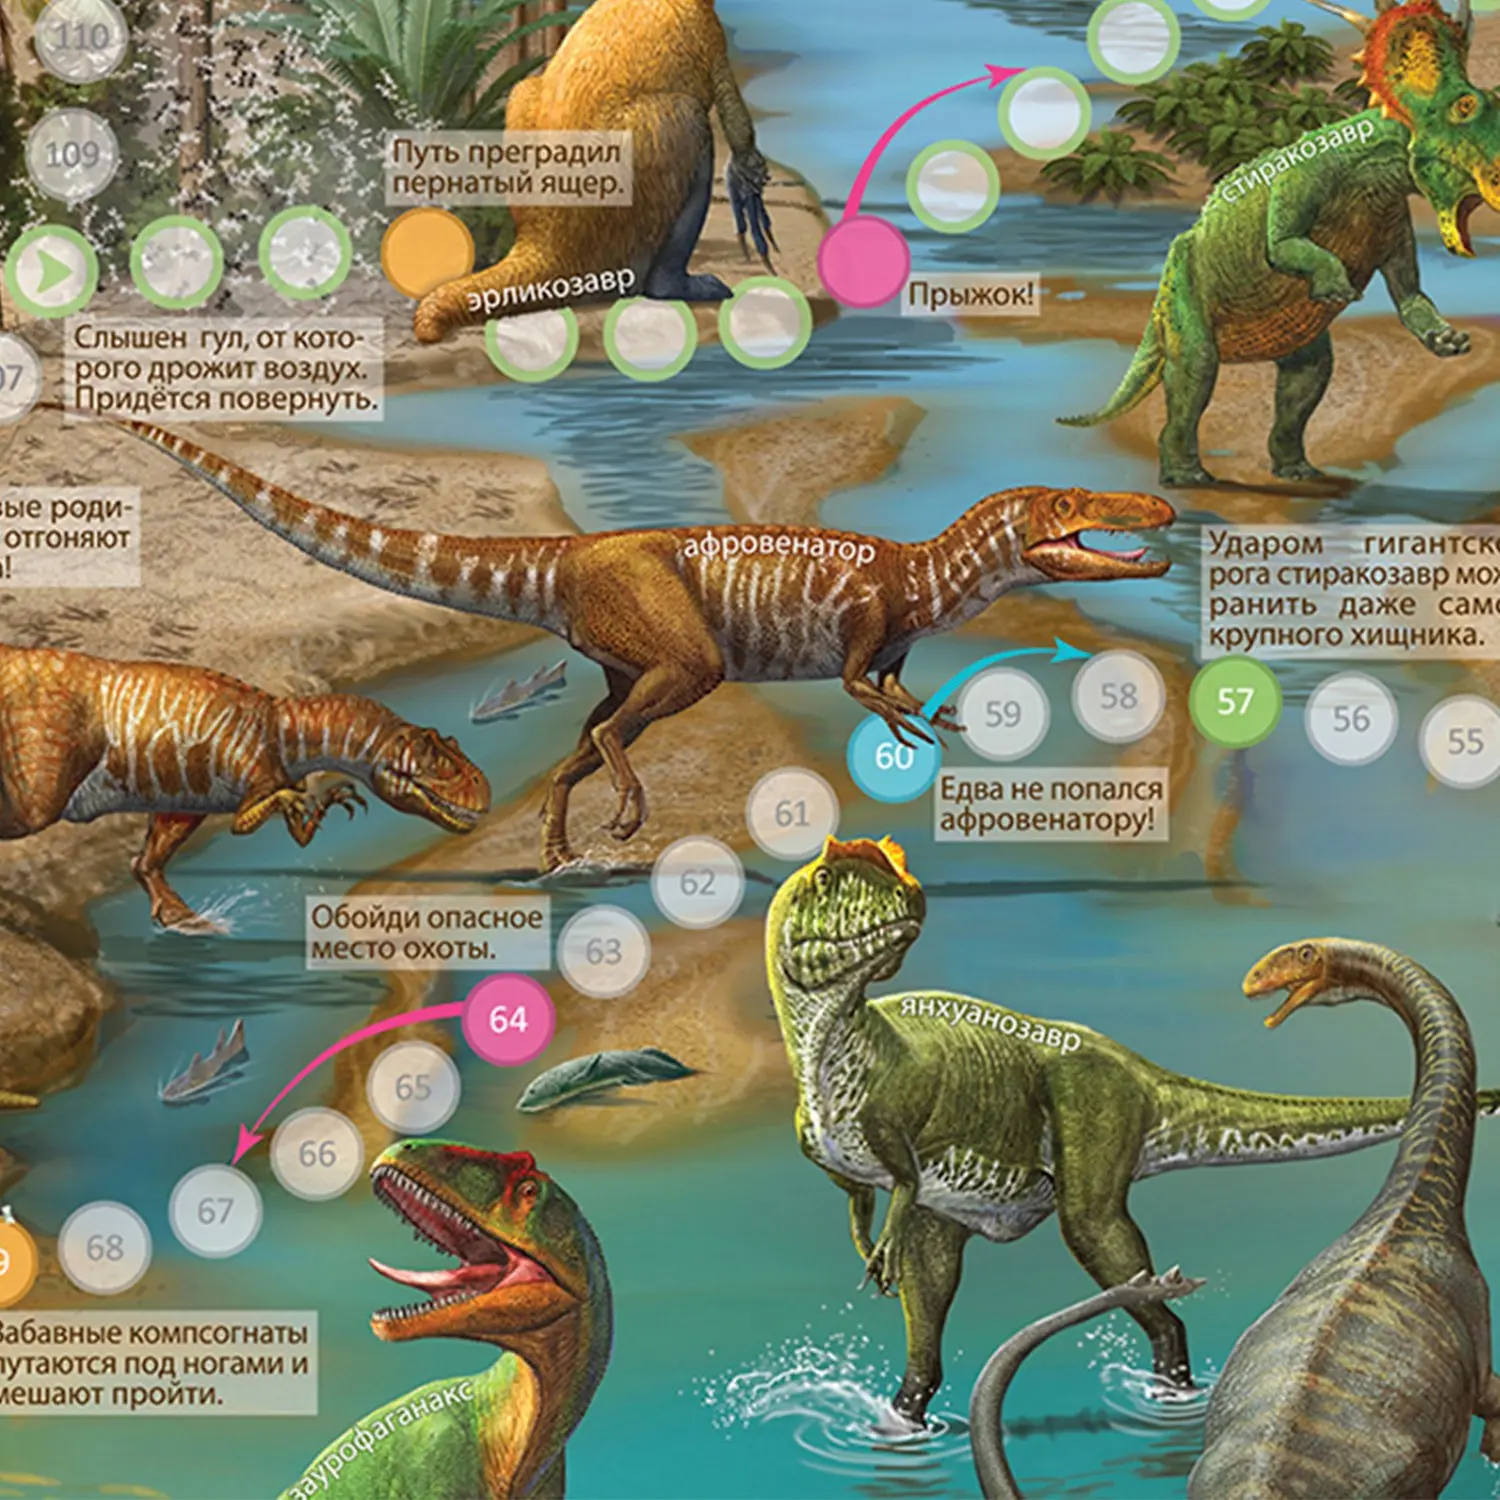 Игра-ходилка "Путешествие в мир динозавров" - фото